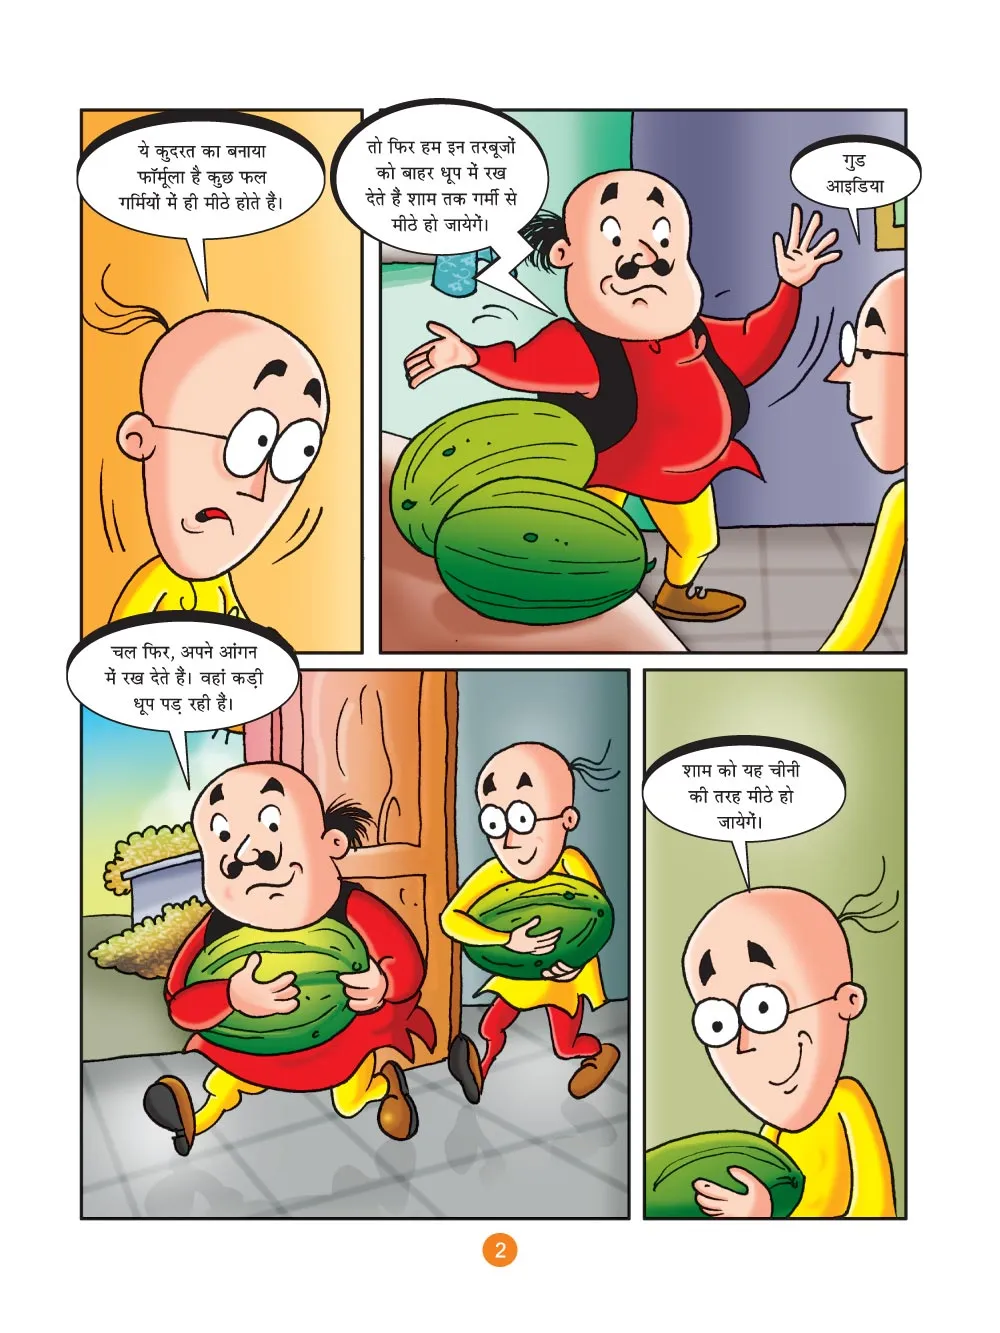 मोटू पतलू की कॉमिक्स- (Motu Patlu Ki Comics) गर्मियों का तोहफा  :